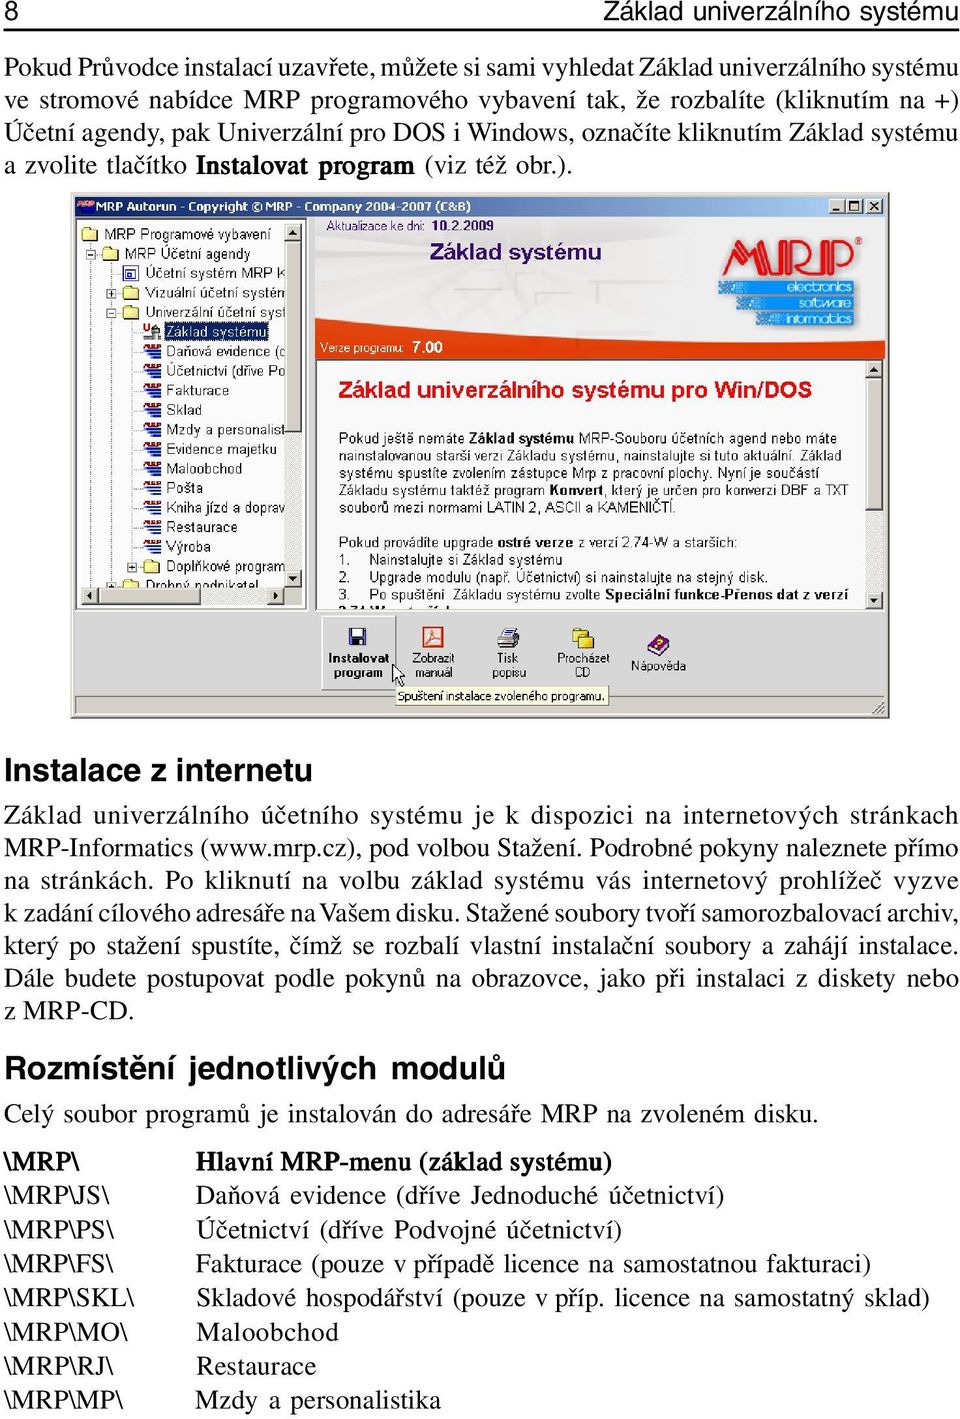 Instalace z internetu Základ univerzálního účetního systému je k dispozici na internetových stránkach MRP-Informatics (www.mrp.cz), pod volbou Stažení. Podrobné pokyny naleznete přímo na stránkách.